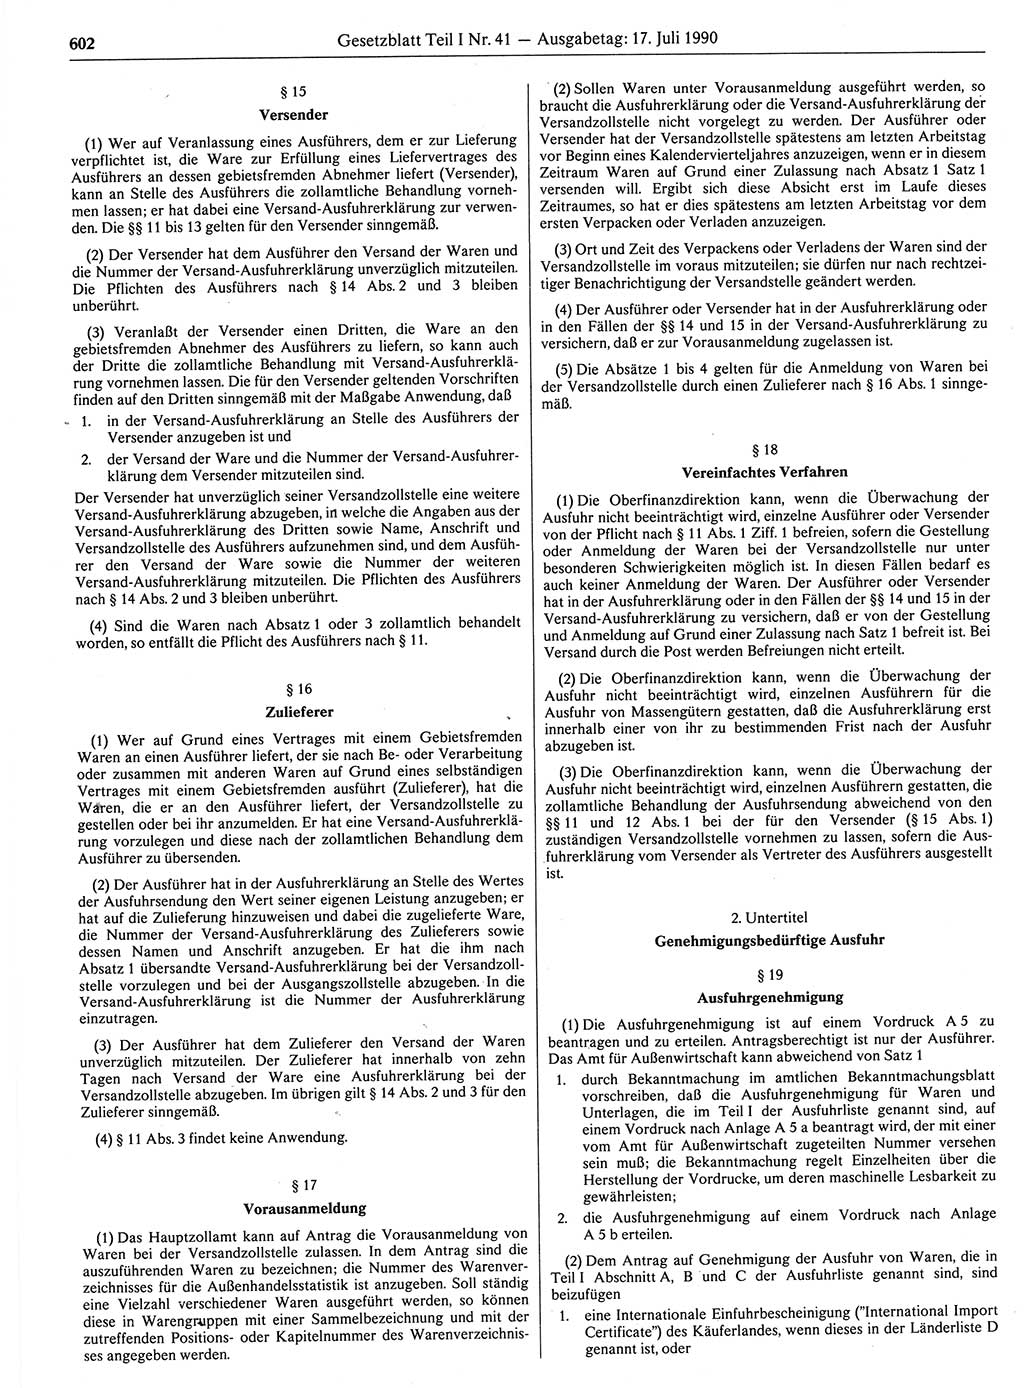 Gesetzblatt (GBl.) der Deutschen Demokratischen Republik (DDR) Teil Ⅰ 1990, Seite 602 (GBl. DDR Ⅰ 1990, S. 602)